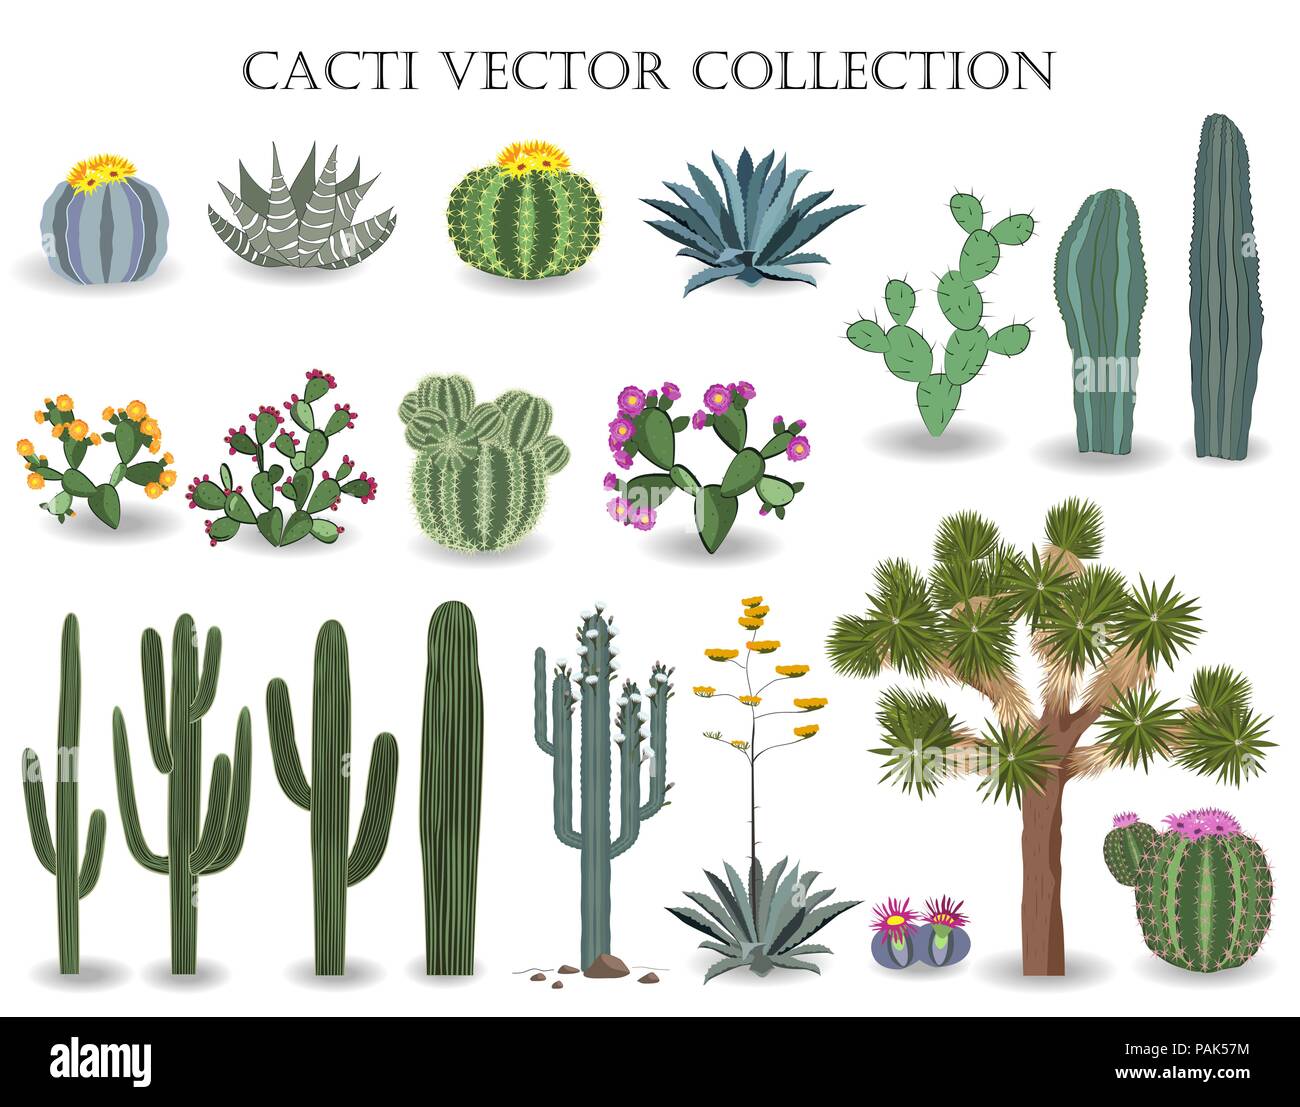 Kakteen vektor Sammlung. Saguaro, Agave, Joshua Tree, Feigenkaktus und andere Kakteen Stock Vektor